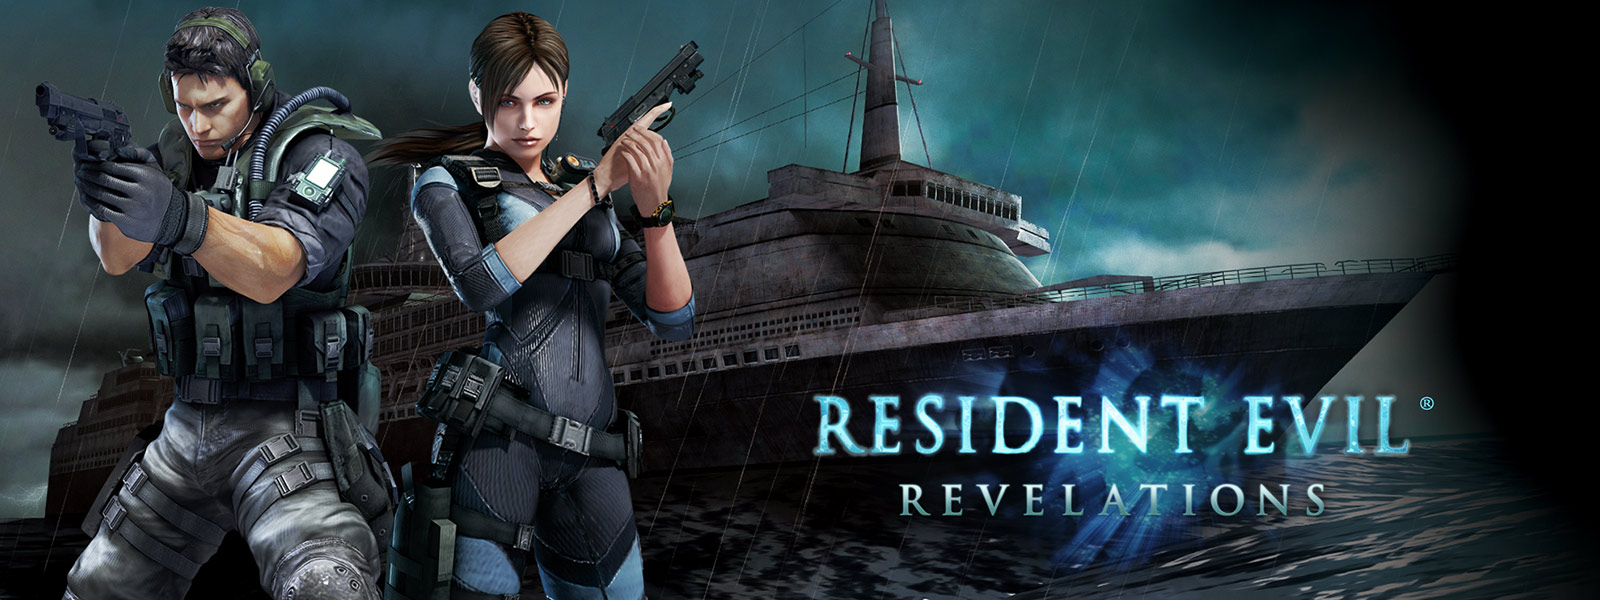 Resident Evil Revelations, hayalet gibi görünen yolcu gemisinin önünde silah tutan iki karakter